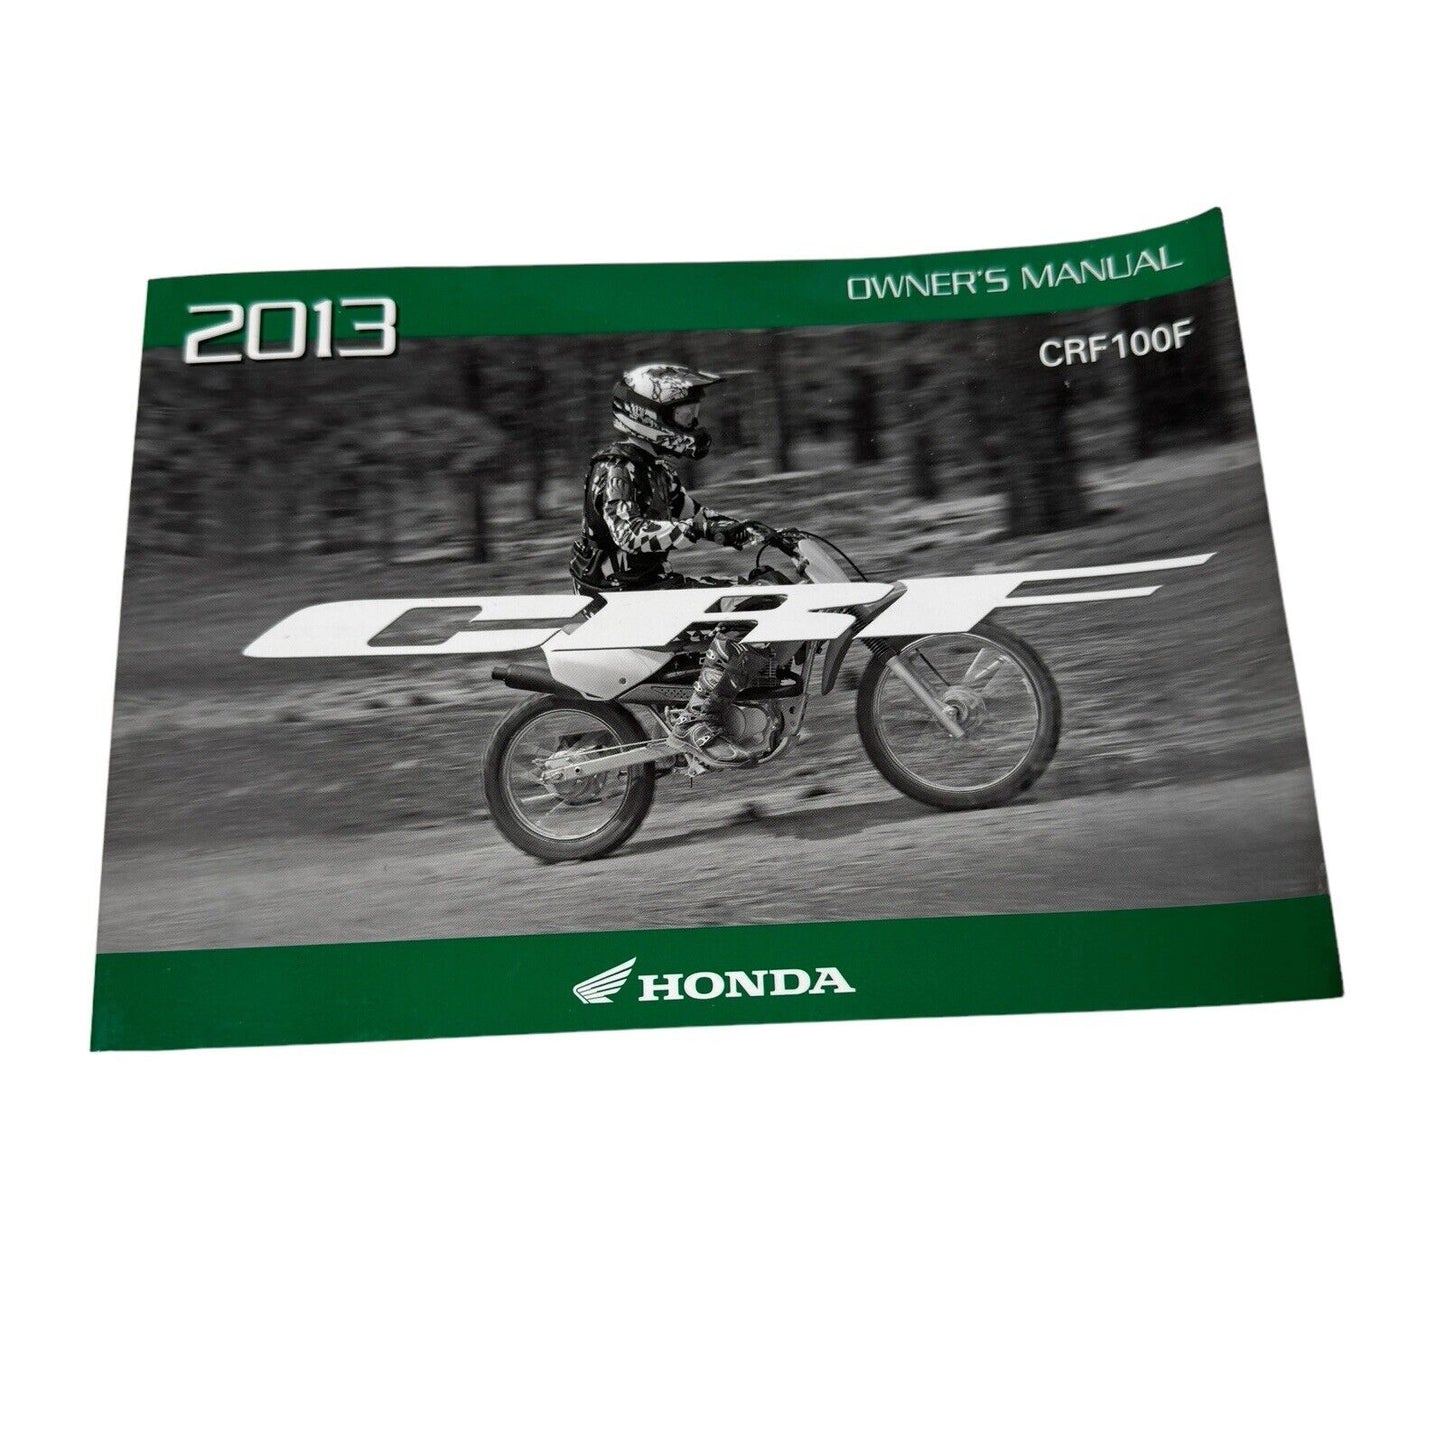 Honda CRF100F 2013 Owners Manual, Factory Oem Book Dirtbike 00x31-KSj-6800